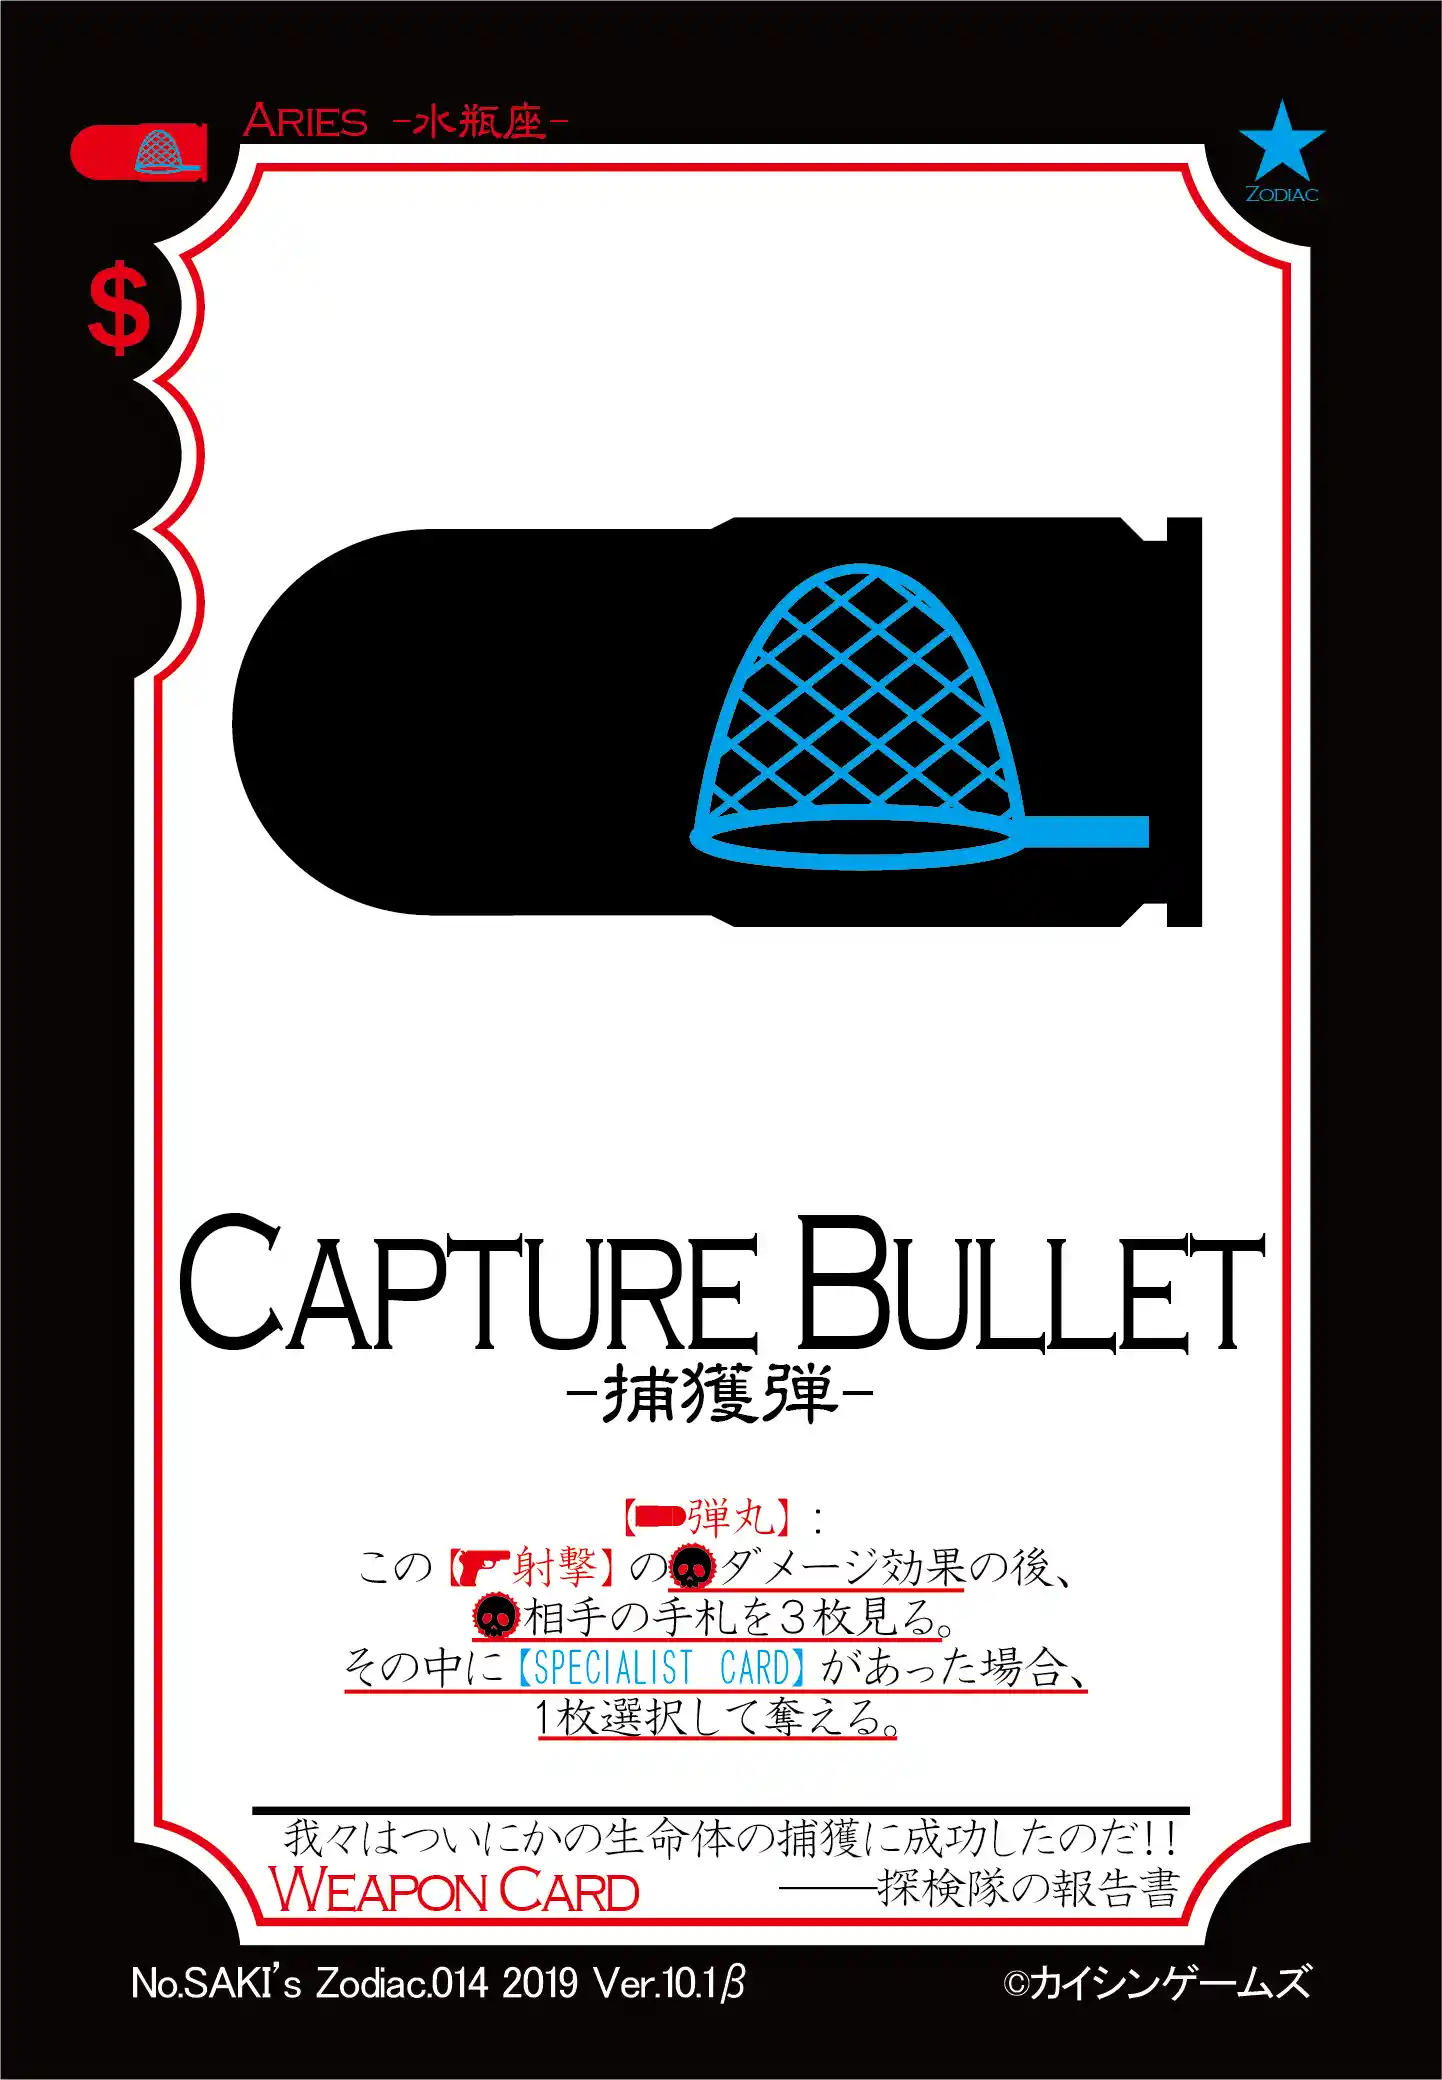 Zodiac.014.Capture Bullet.png